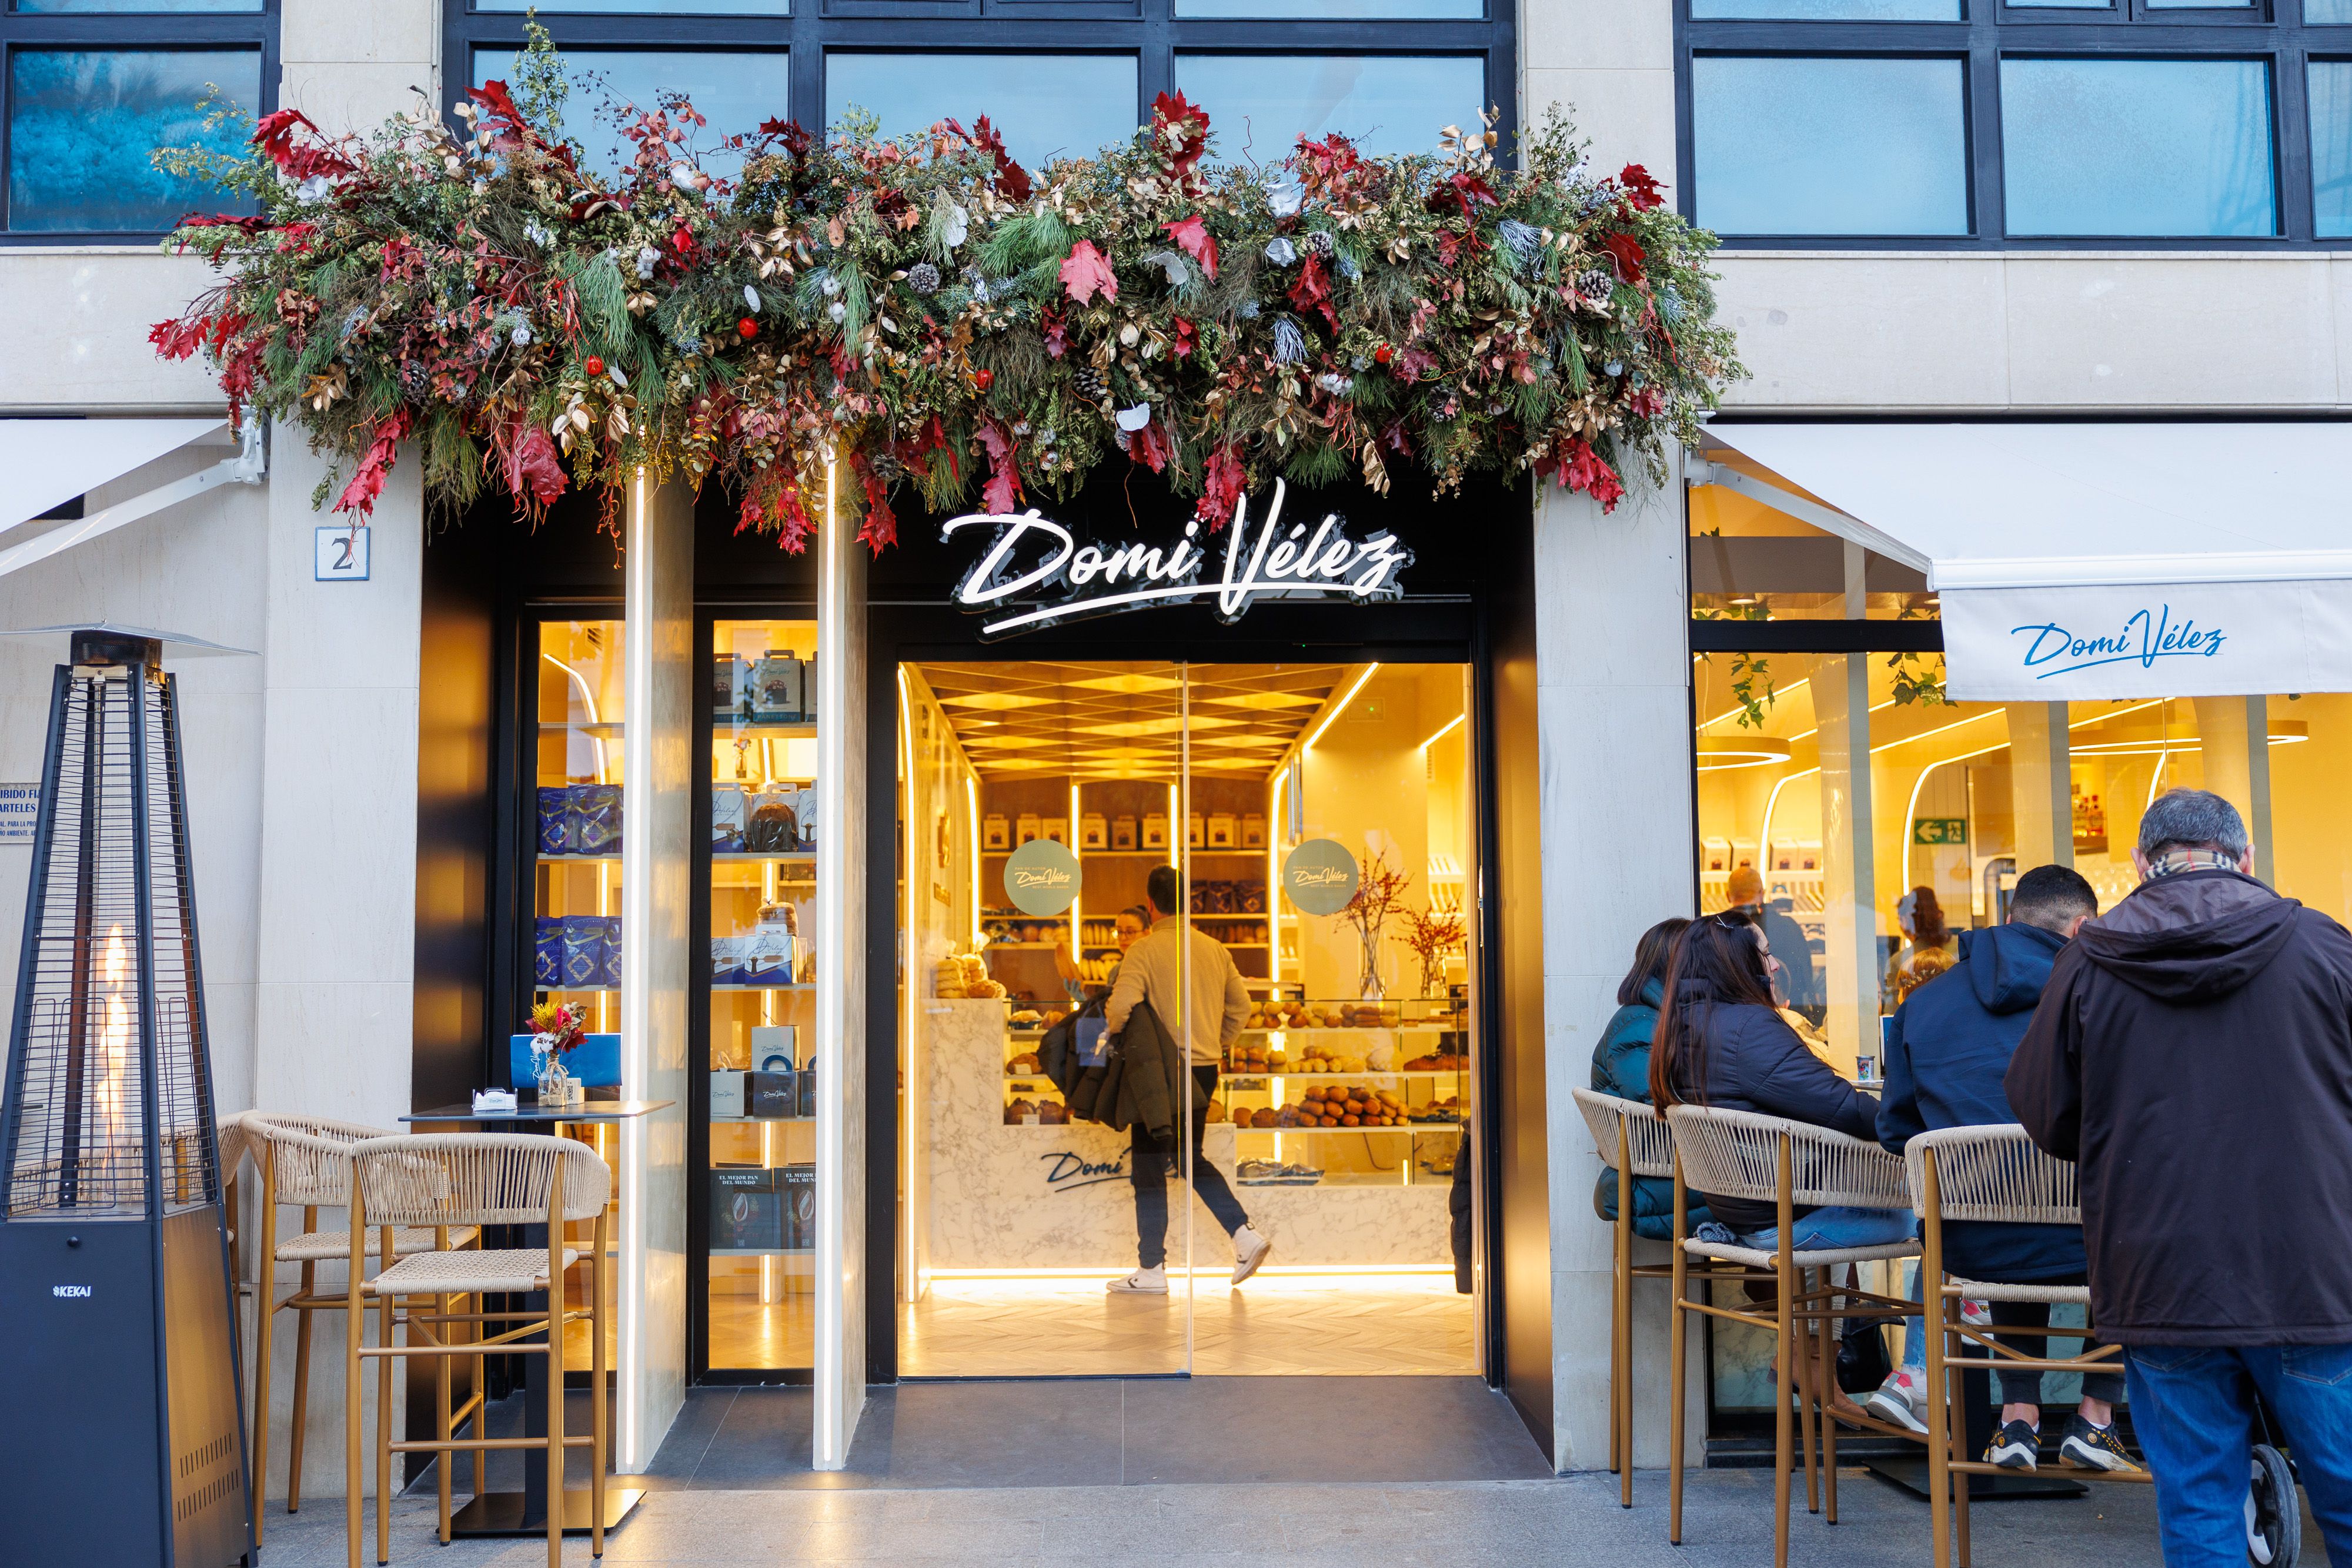 La cafetería, panadería y pastelería que Domi Vélez tiene en Lebrija, su localidad natal.